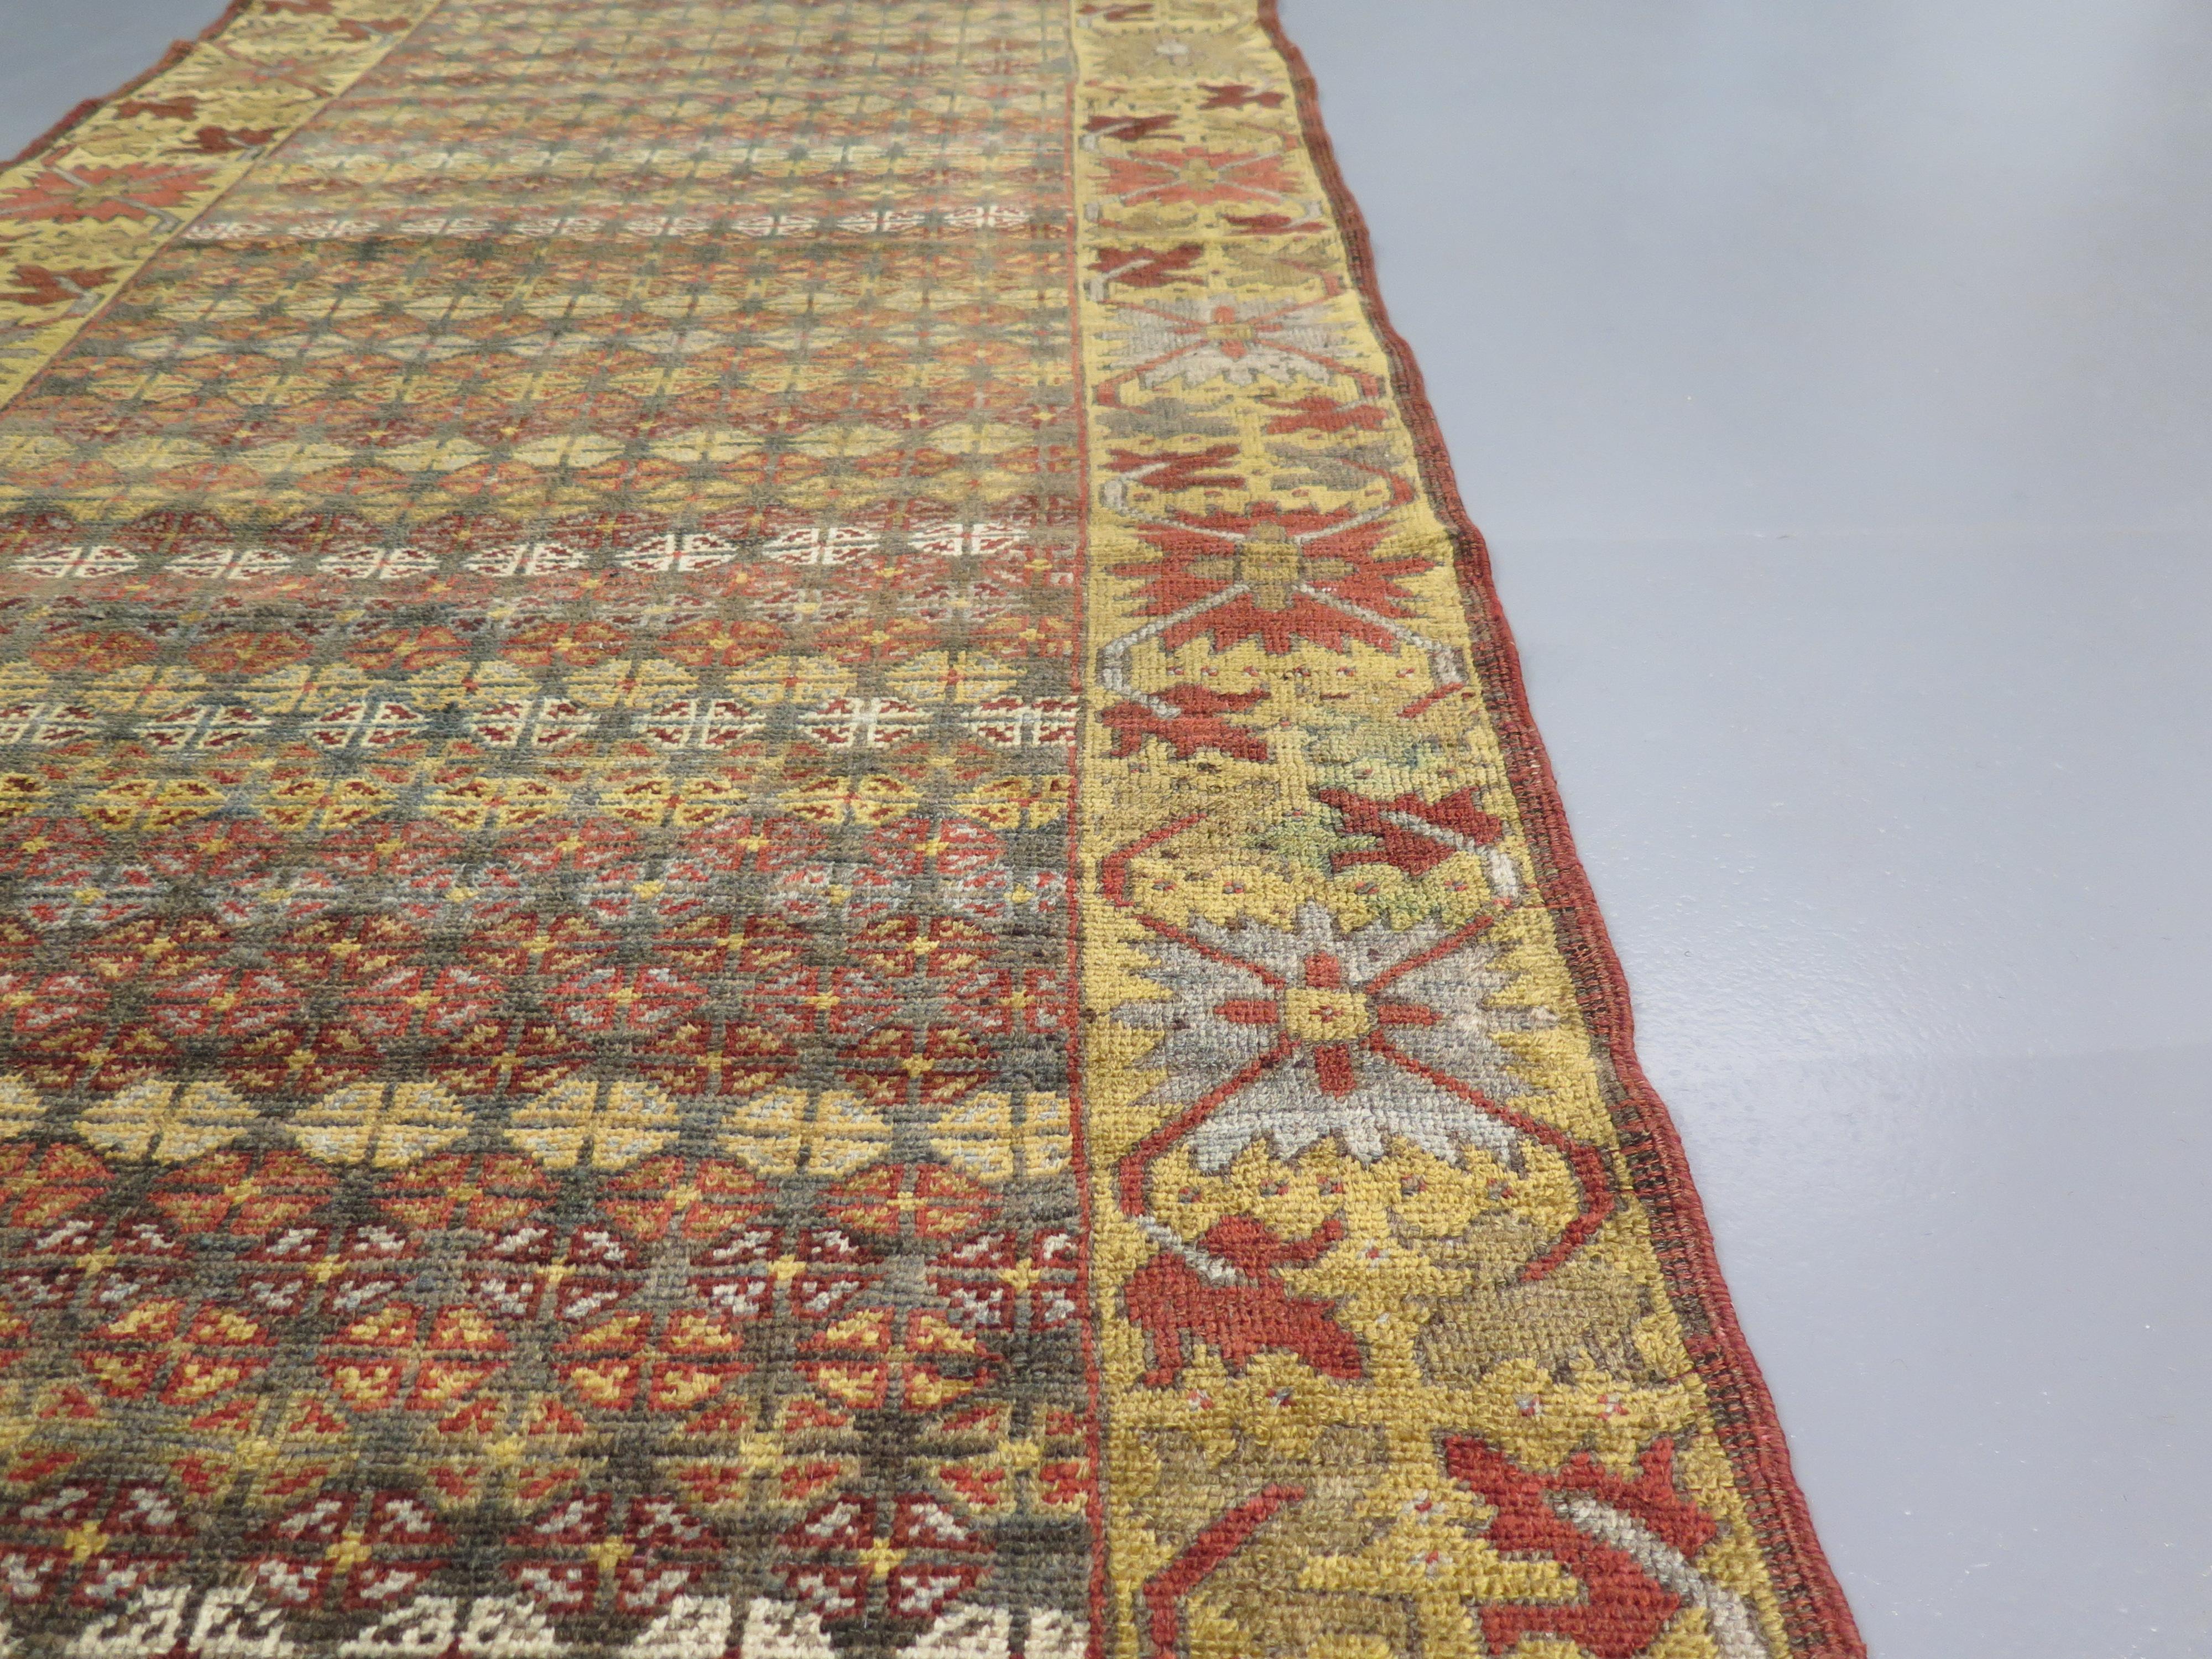 L'Azerbaïdjan a une riche histoire de tissage de tapis, qui remonte à plusieurs siècles. Le pays se trouve au carrefour de plusieurs cultures, et ses tapis le reflètent par leur créativité et leur diversité. En tant que telles, ces pièces sont très